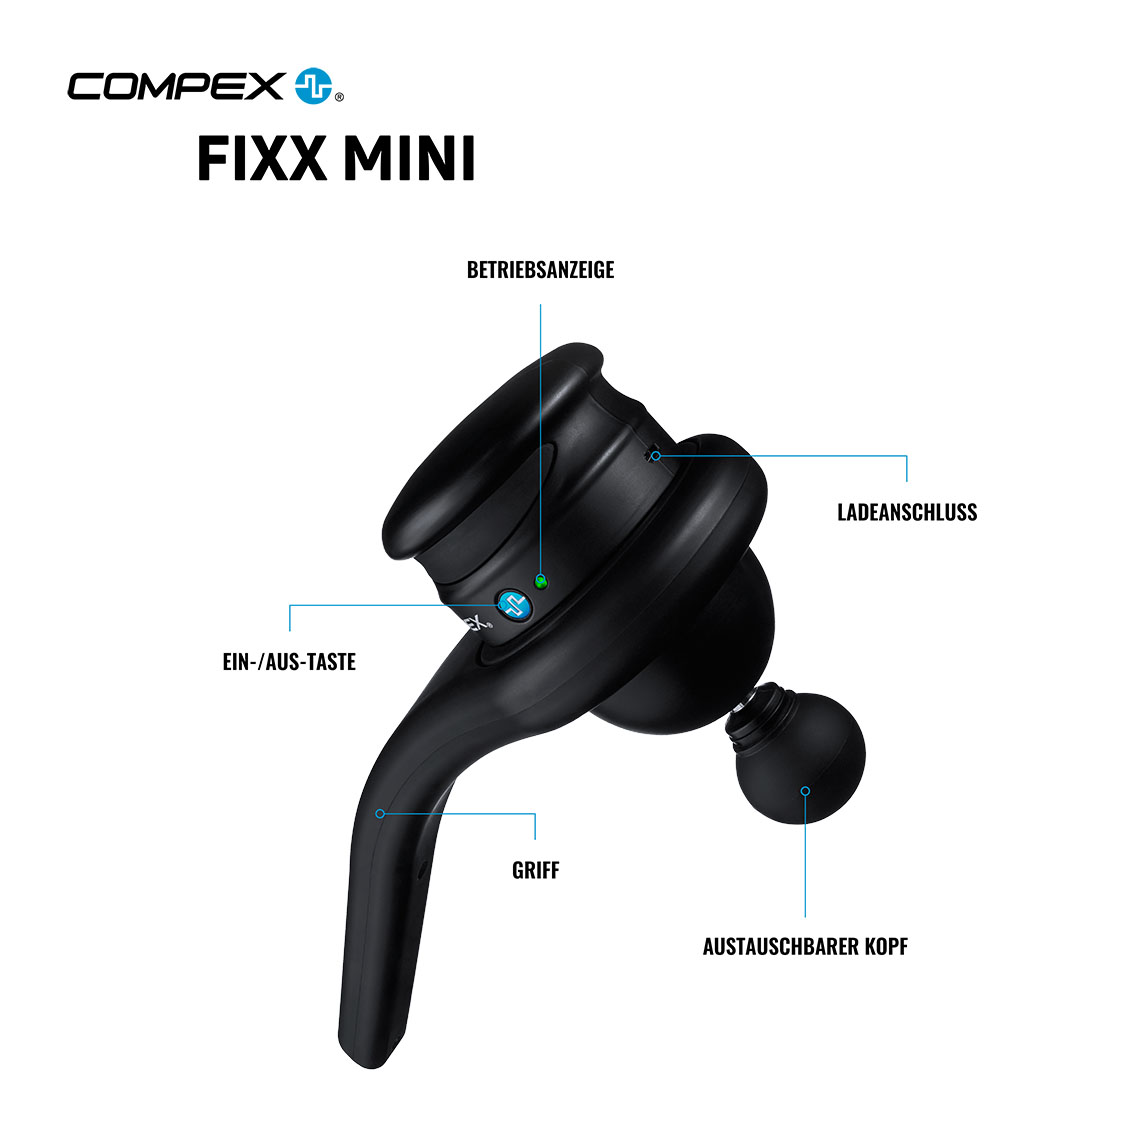 Compex Fixx Mini Infographic